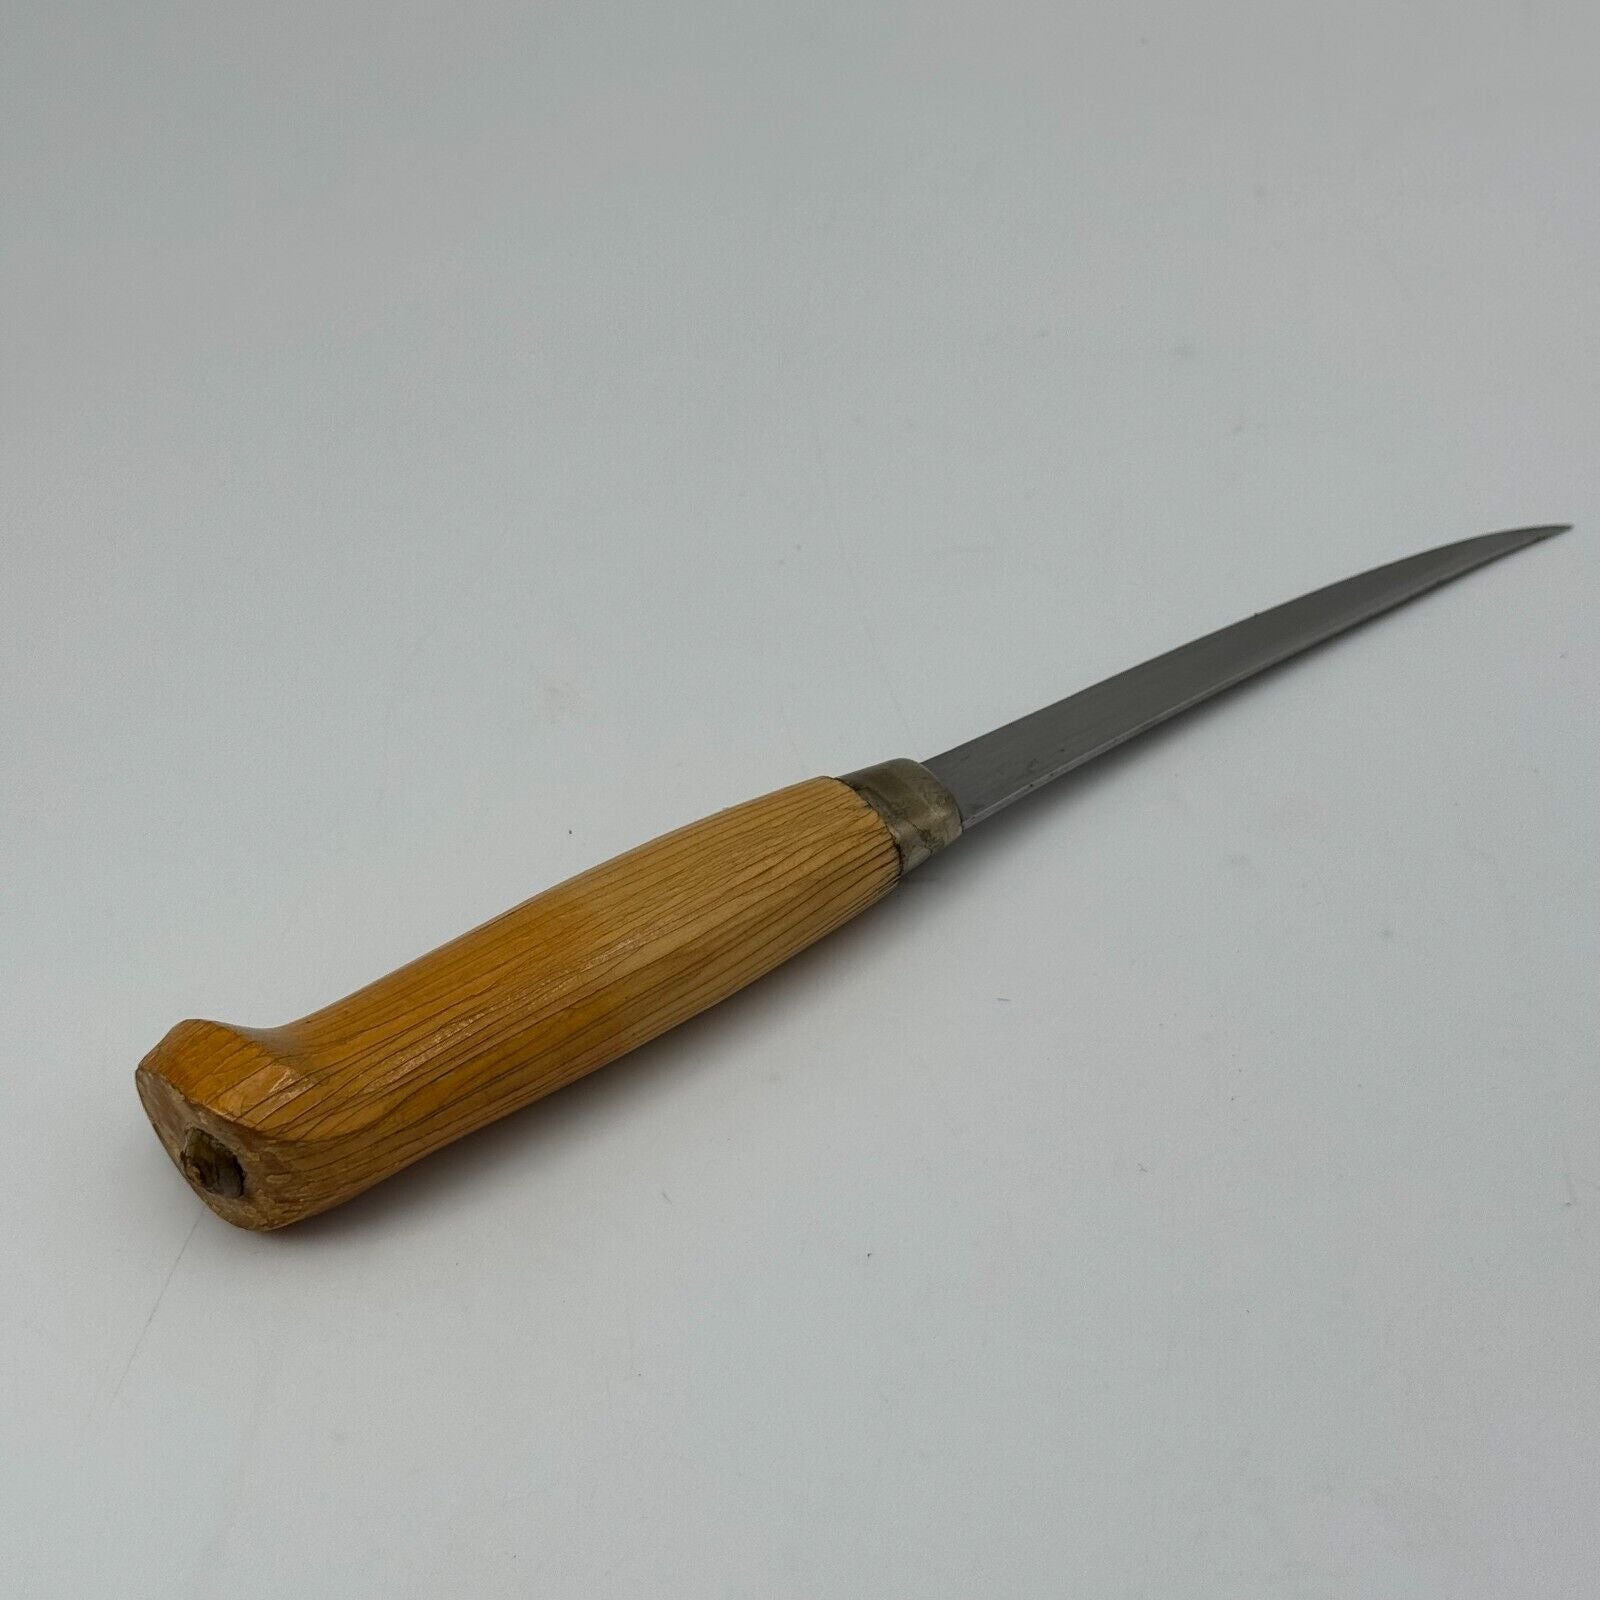 Rare Vintage 1990's J. Marttiini Finland Filet Knife Engraved Signed 4" blade